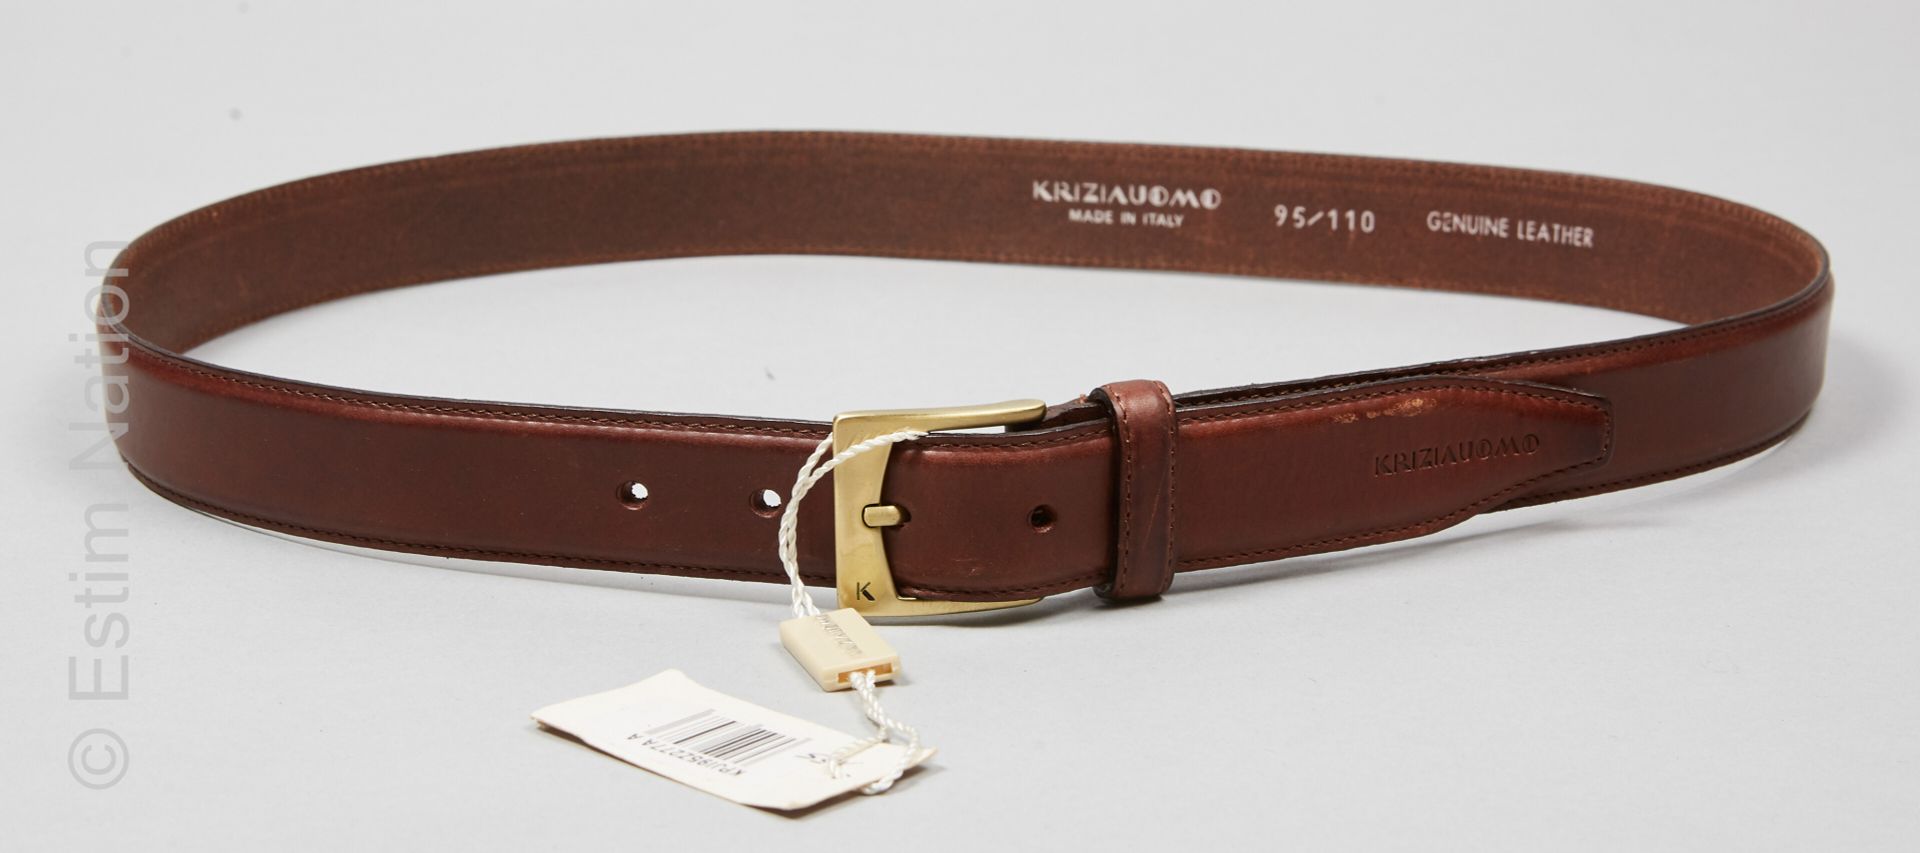 KRIZIA UOMO 棕色牛皮腰带，专利铜质带扣（S 95/110）（带标签的全新状态）。